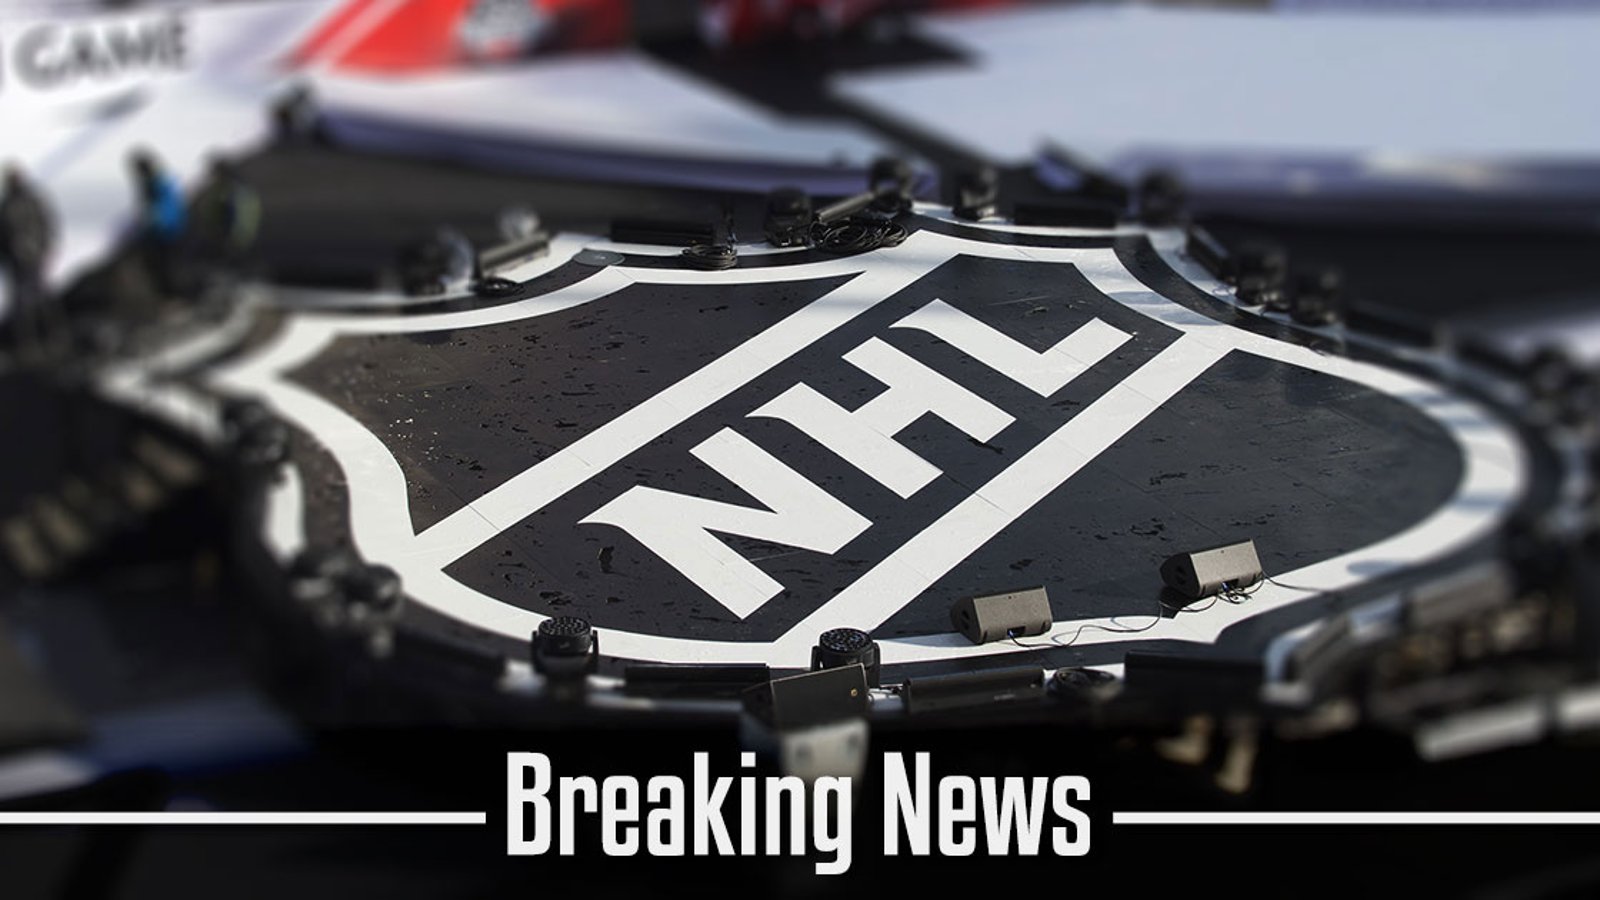 Breaking: NHL team has accused newspaper fabricating shocking story.